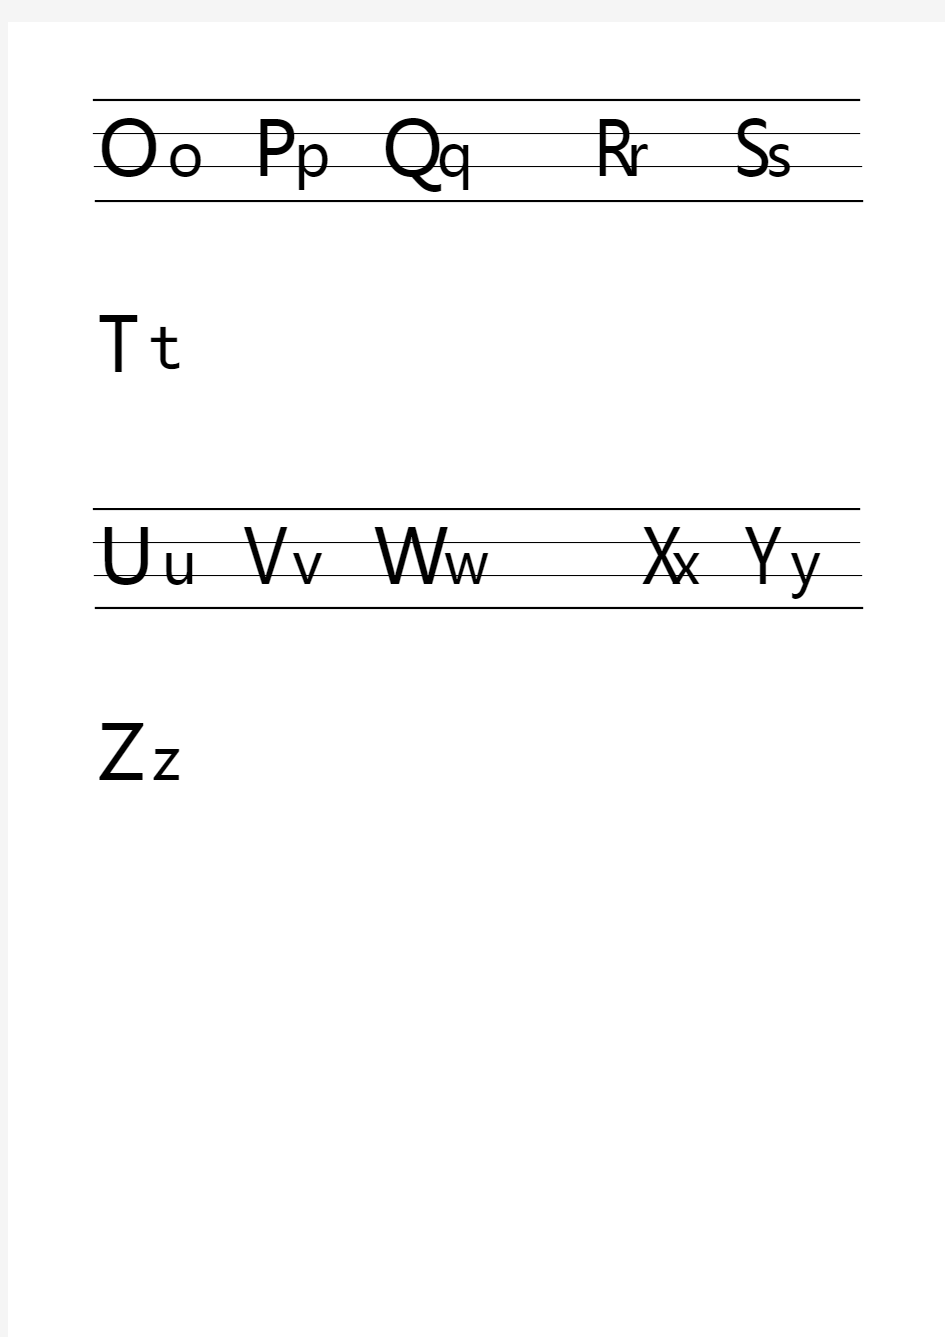 汉语拼音字母表(26个字母)